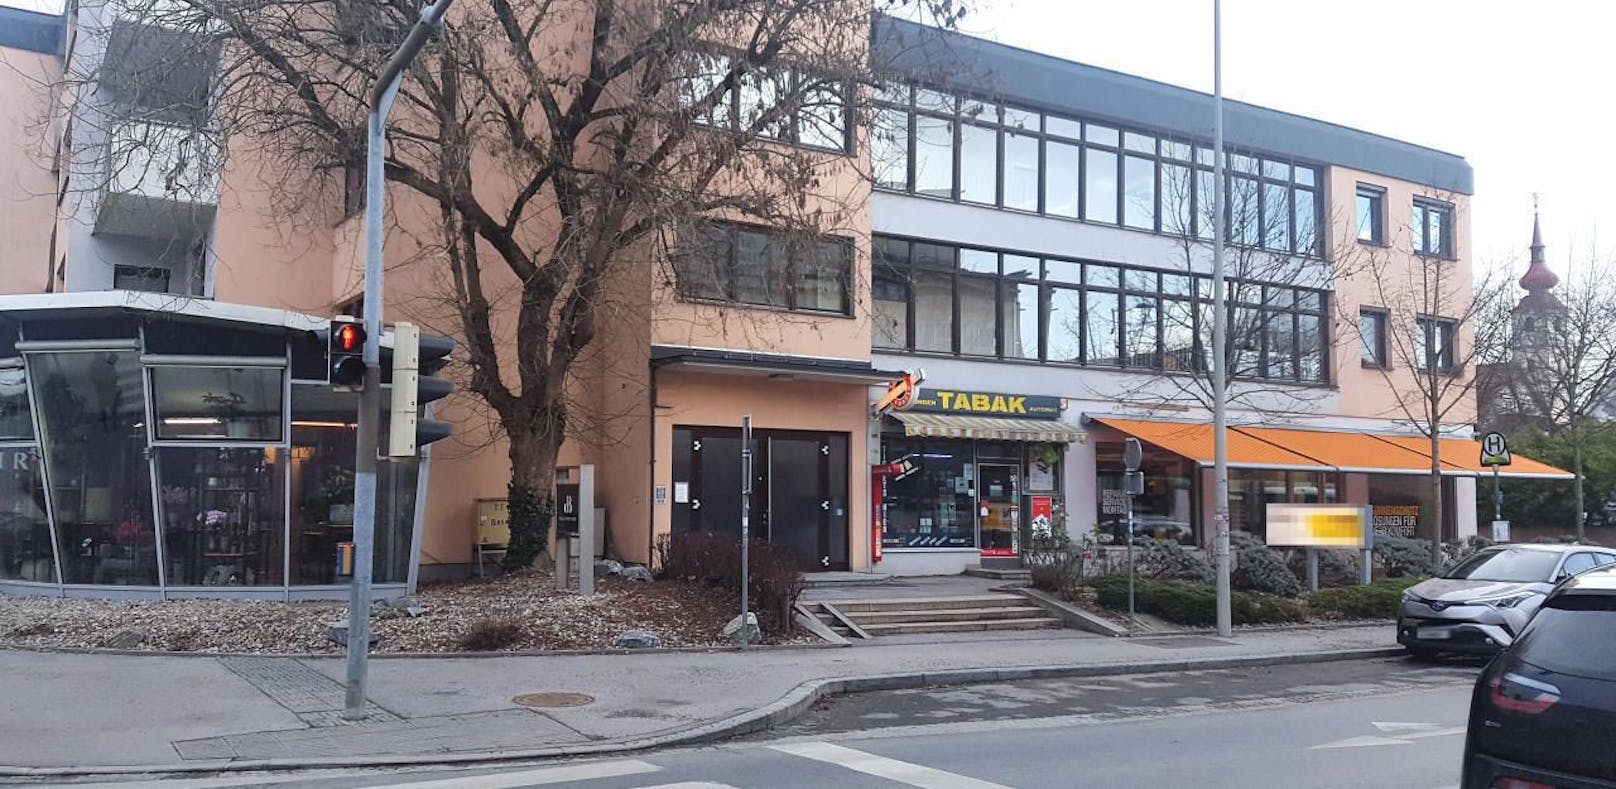 Ein 27 Jahre alter Mann hat am Dienstag, 04. Februar 2020, eine noch unbekannte Frau auf der Straße im Bezirk St. Peter in Graz mit einem Messer lebensgefährlich verletzt. Passanten alarmierten die Einsatzkräfte, der Mann wurde festgenommen.